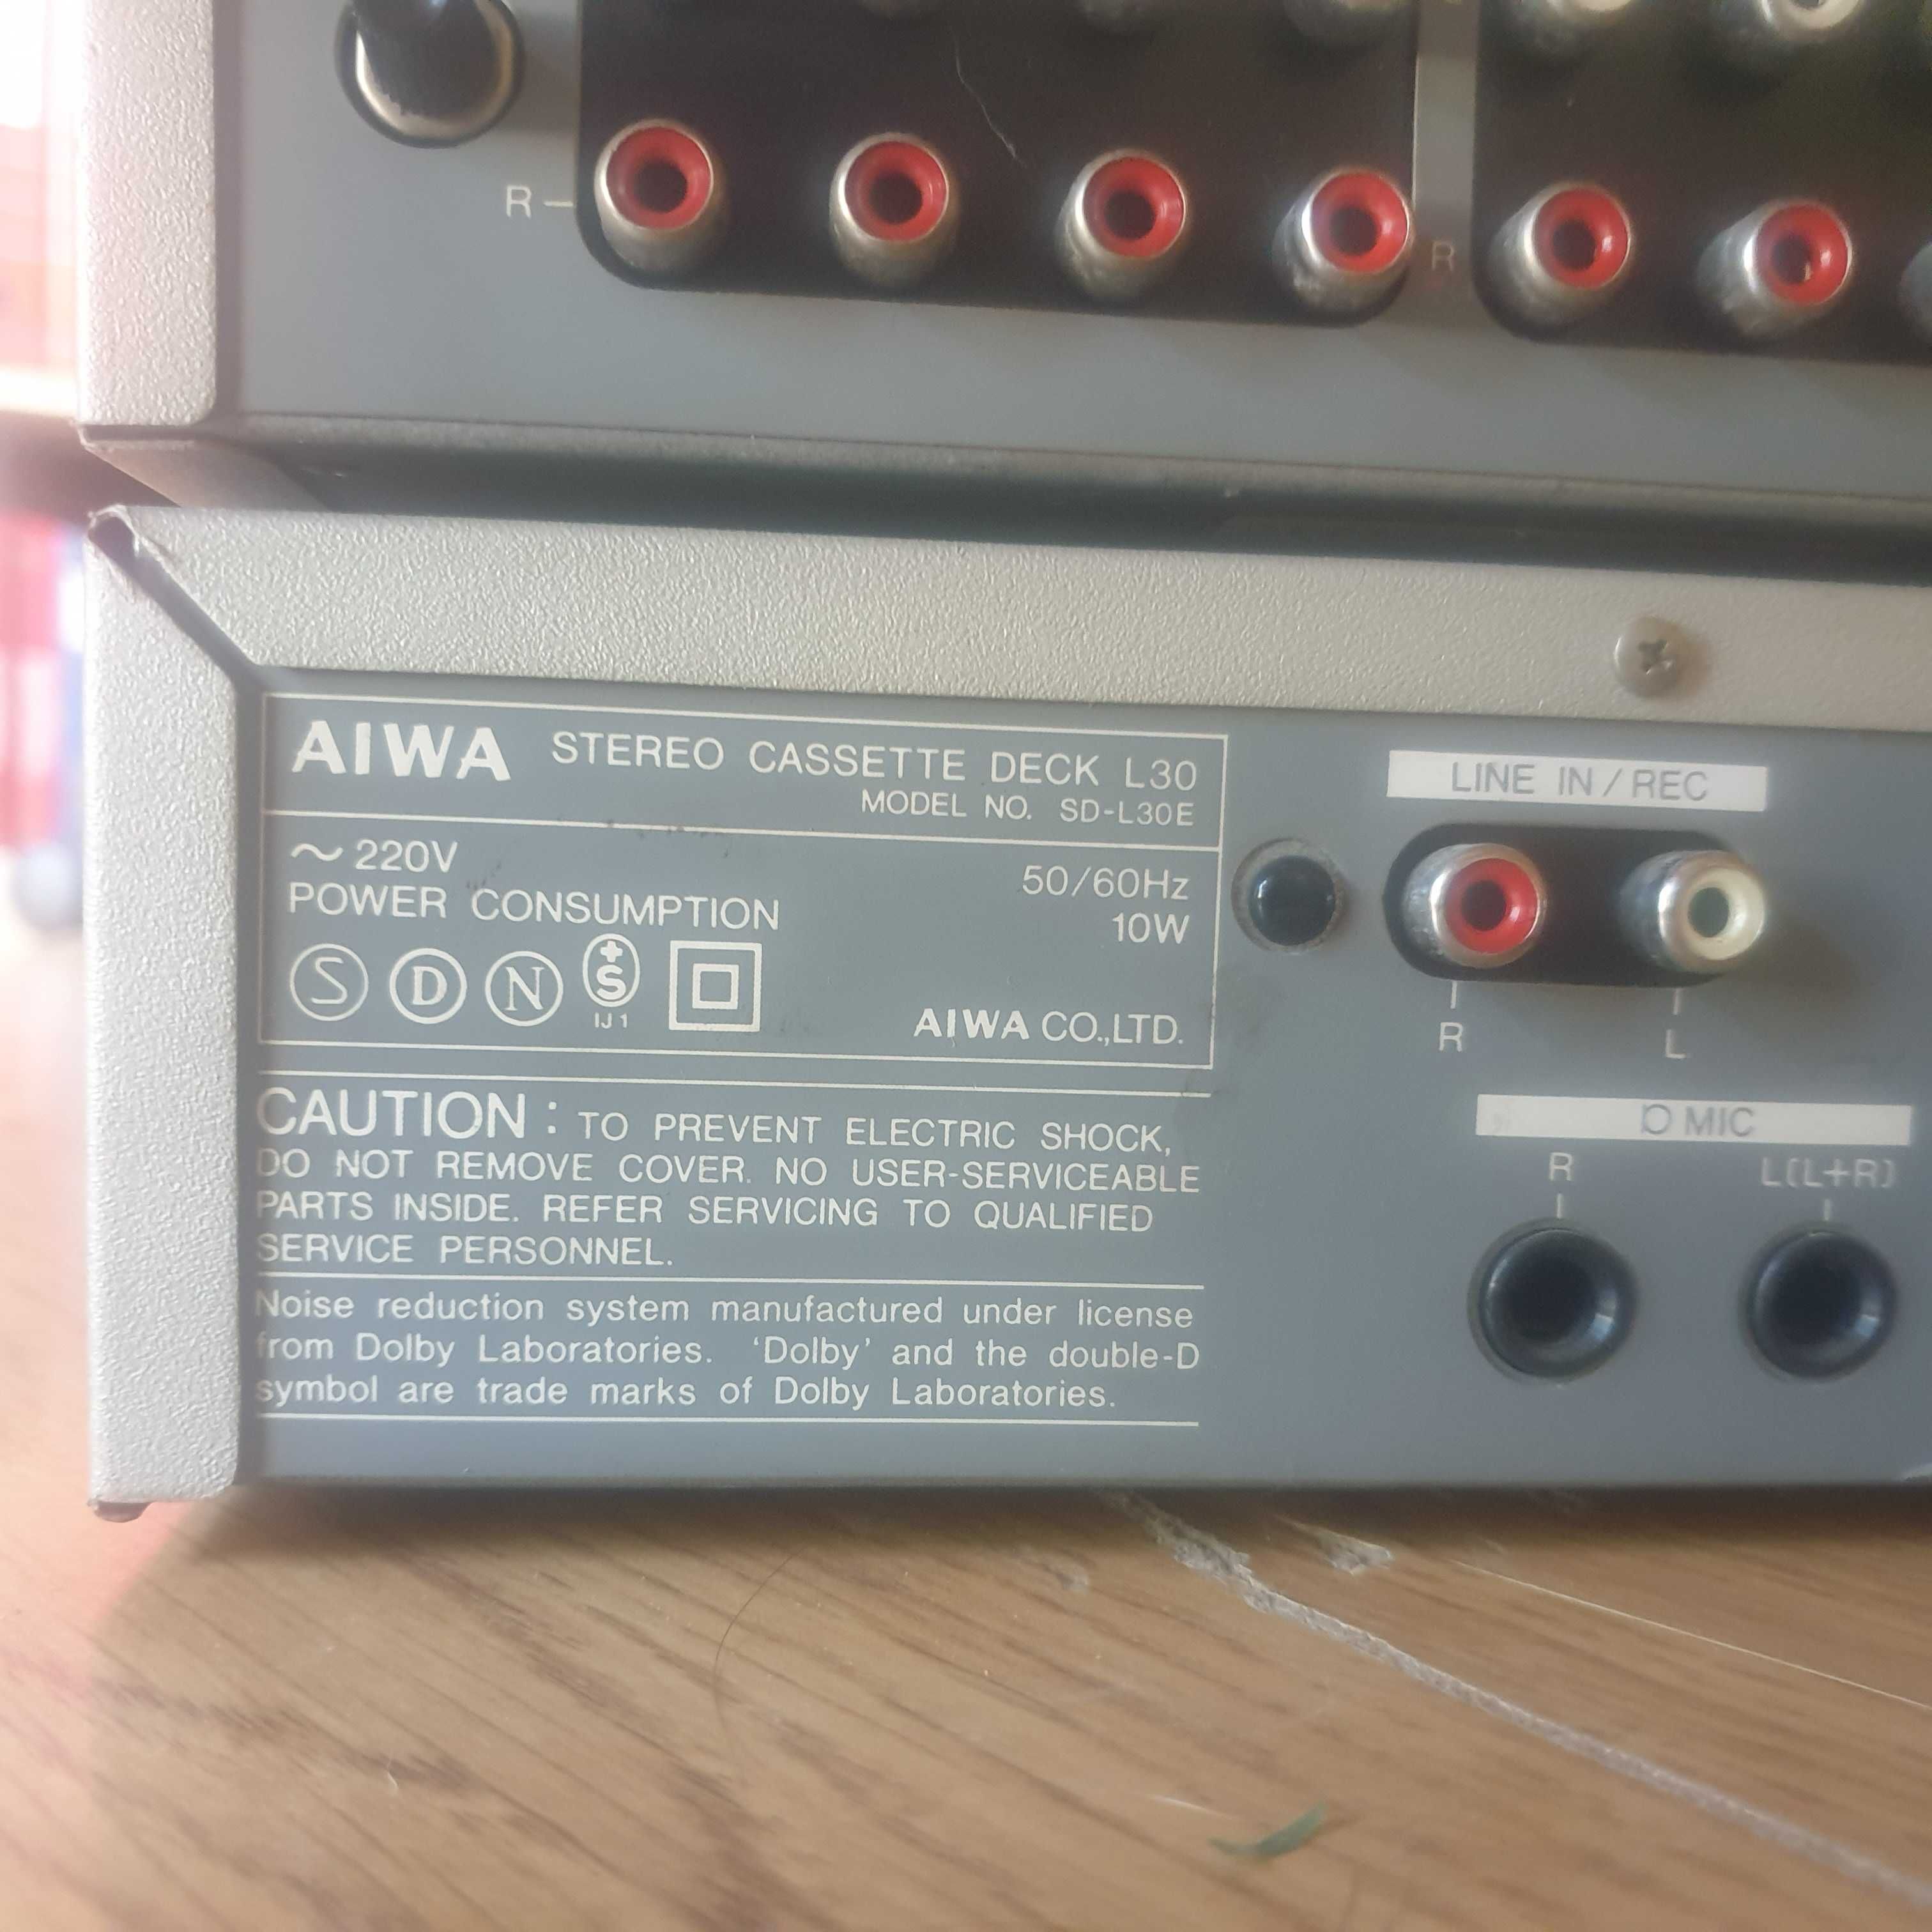 Aparelhagem AIWA + 2 colunas originais AIWA ( + 2 Trust + 2 Amstrad)